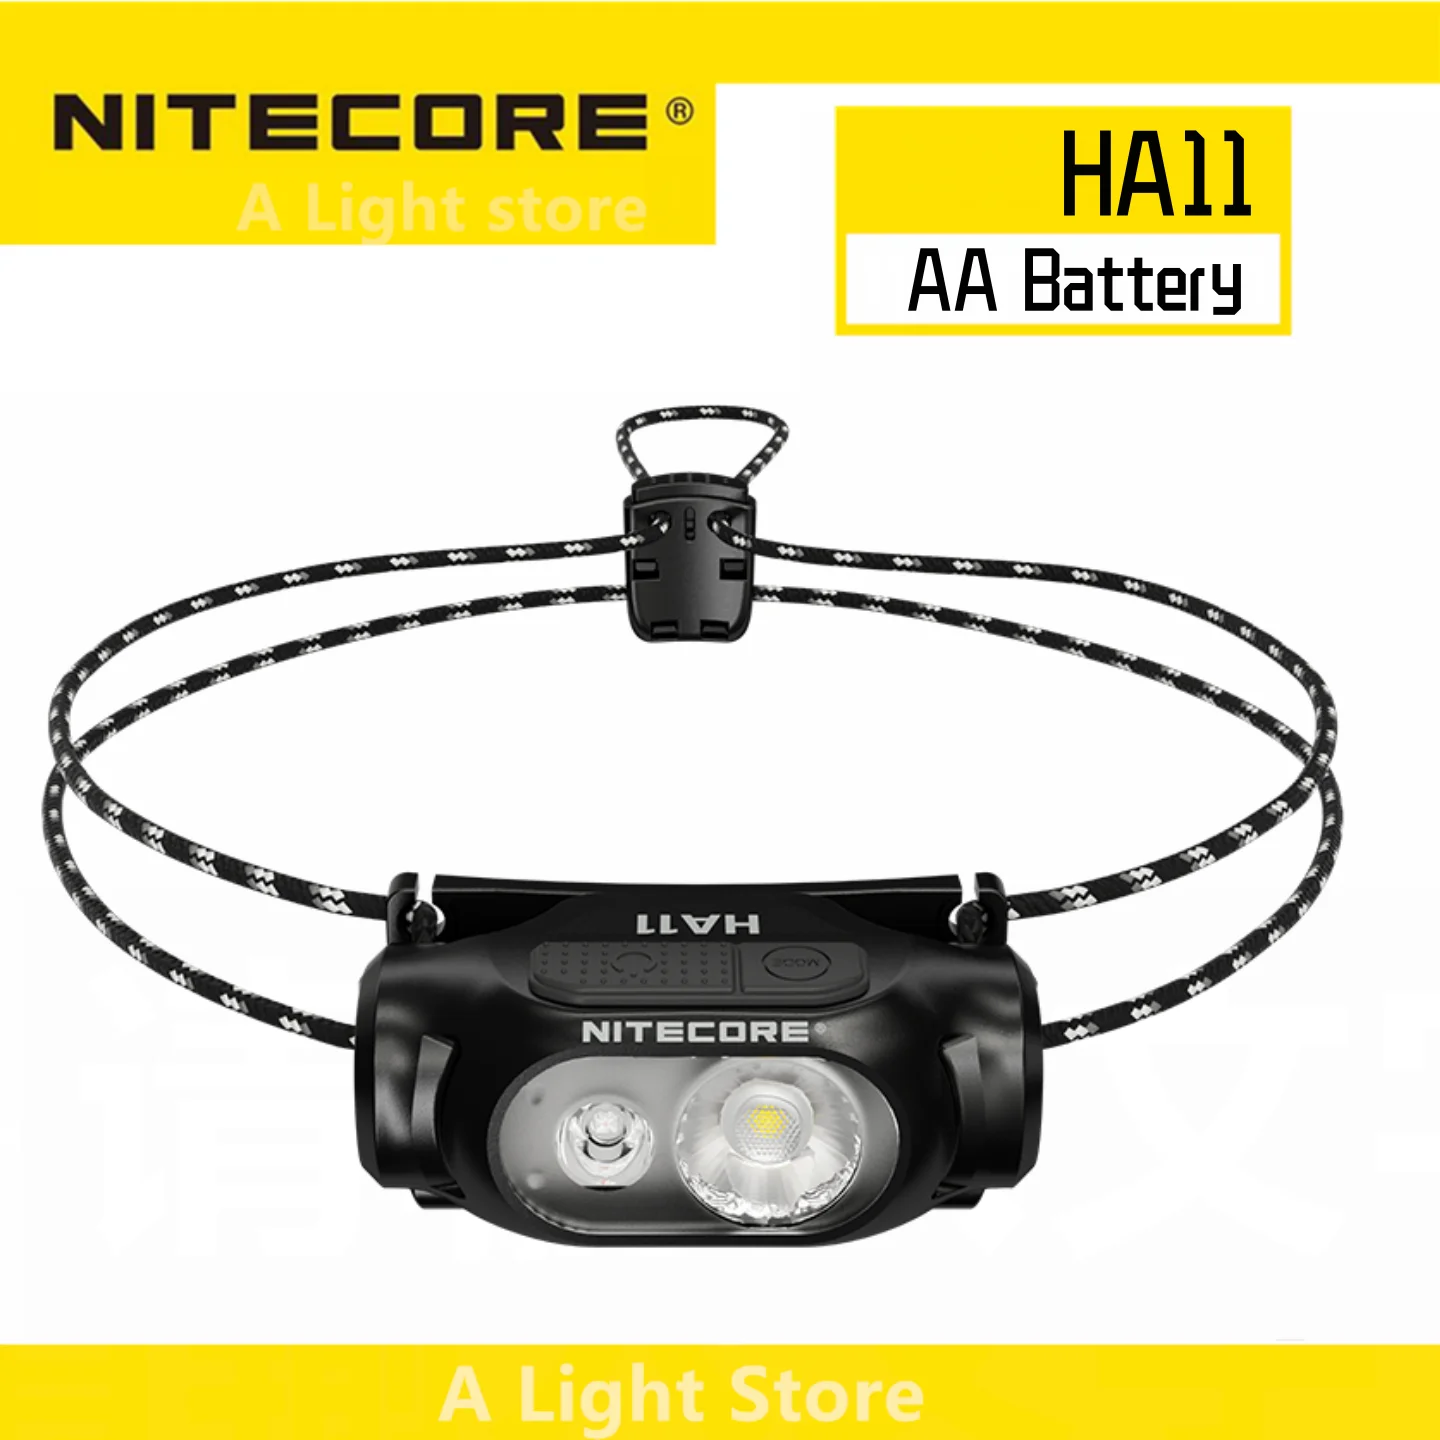 Налобный фонарь NITECORE HA11 с батареей типа АА, водонепроницаемый головной фонарь для кемпинга, головной фонарь для рыбалки, Ходовая фара, фонарь для кемпинга